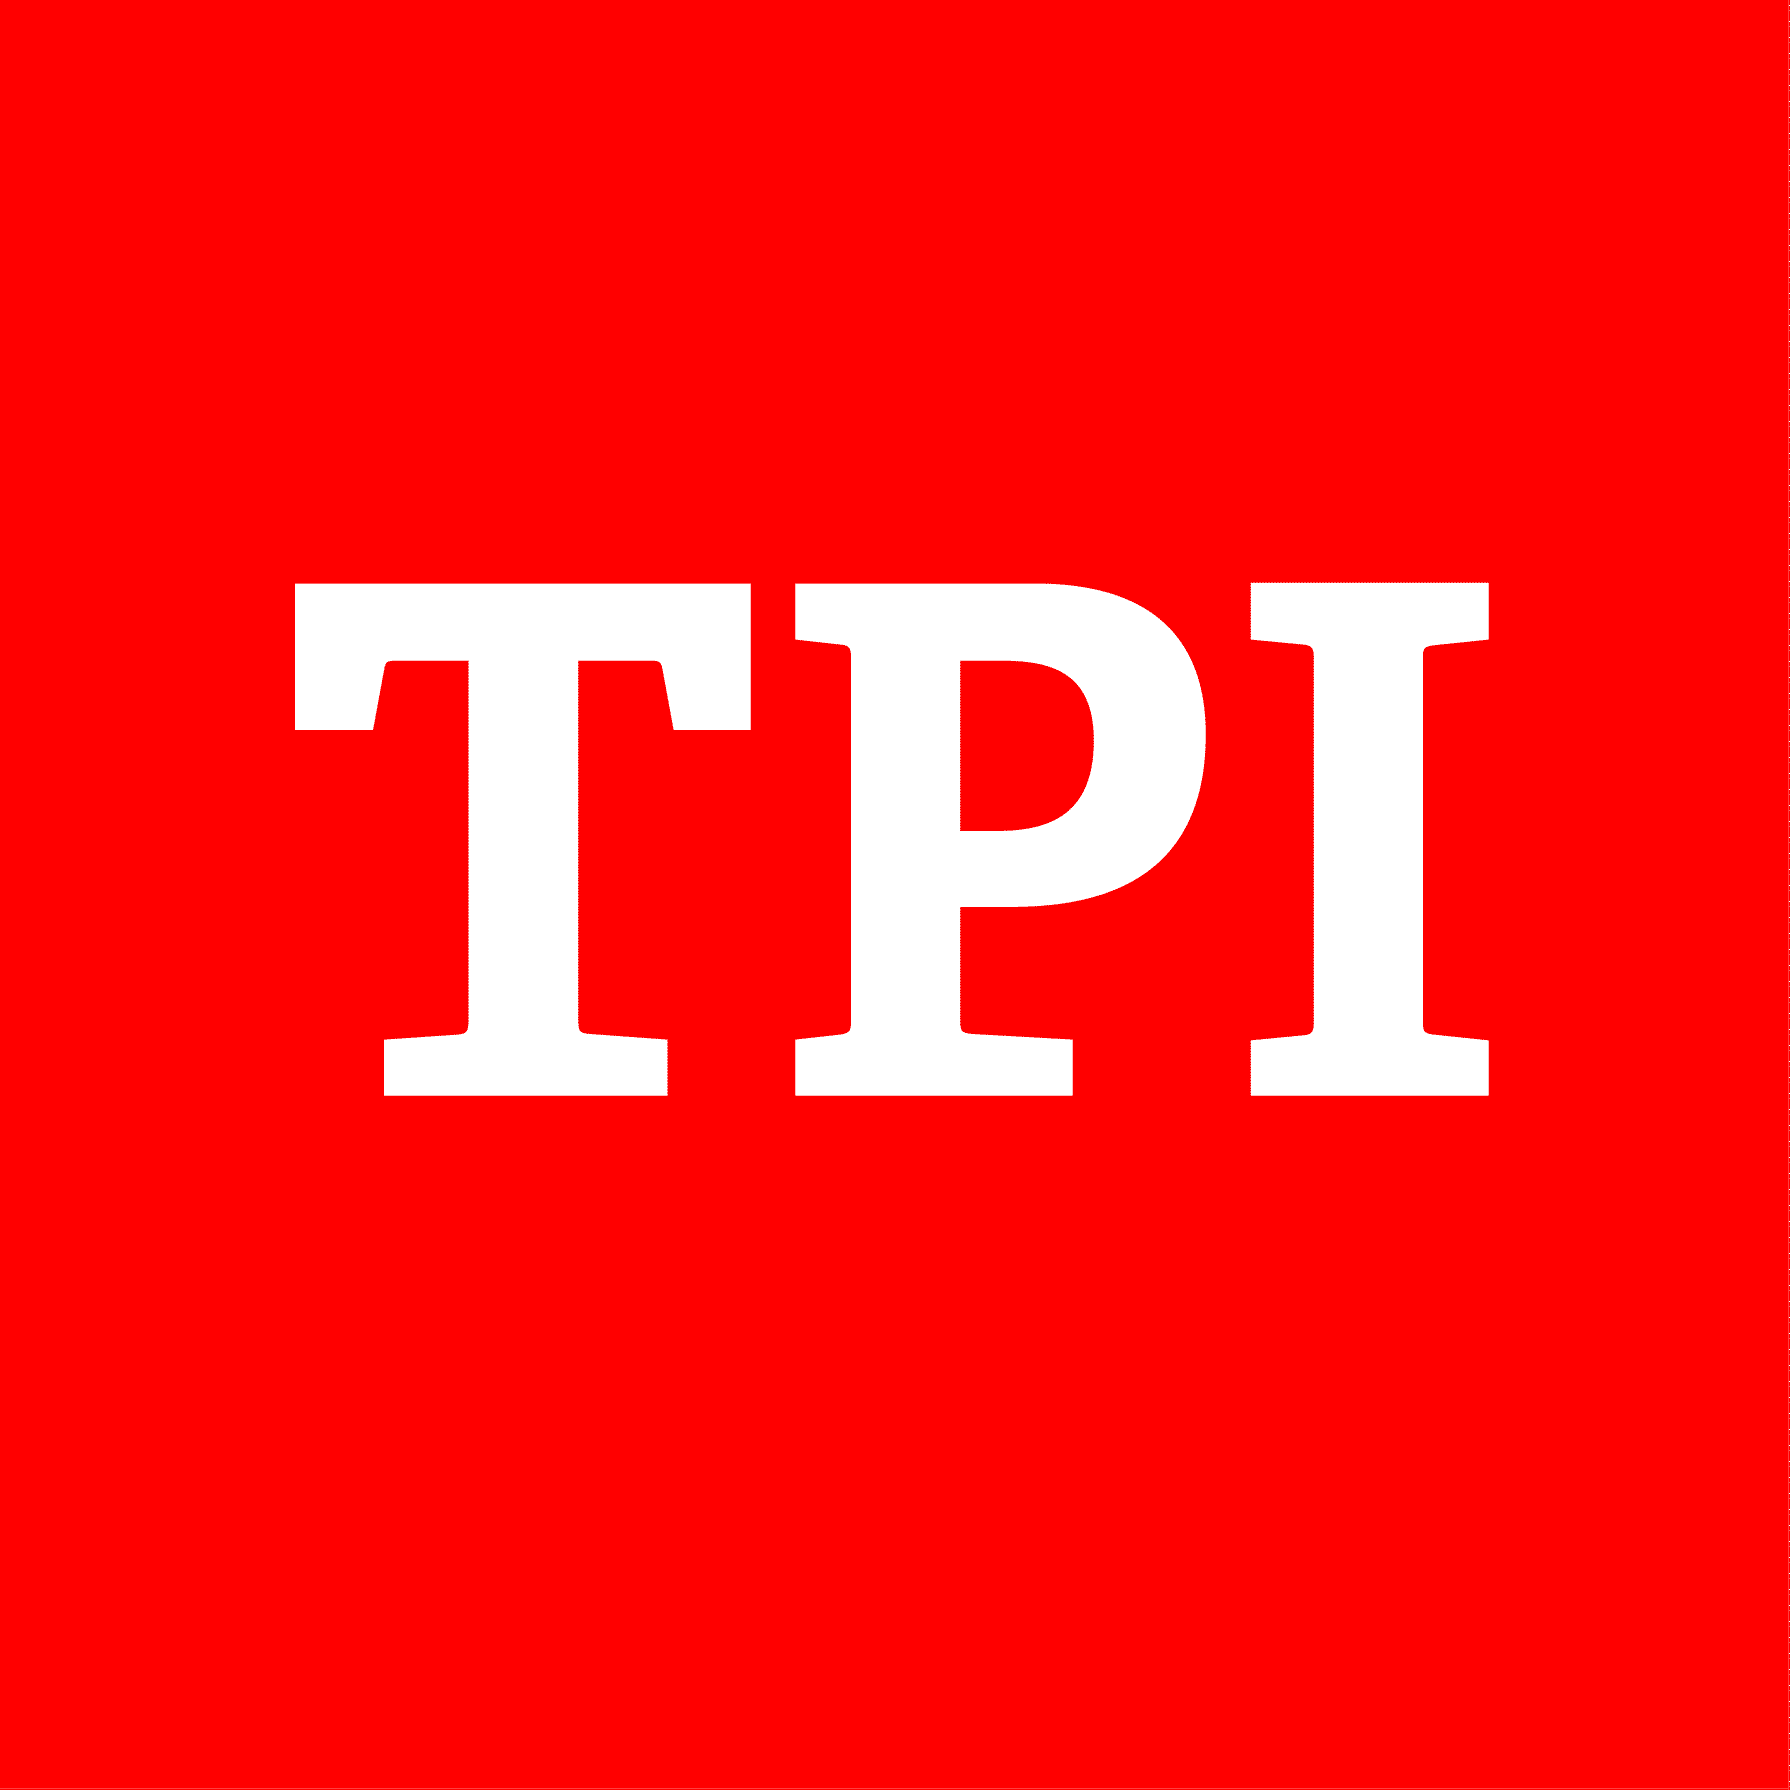 View TPI - Notizie Ultima Ora | Ultime news di conaca, politica, attualità oggi outages and uptime